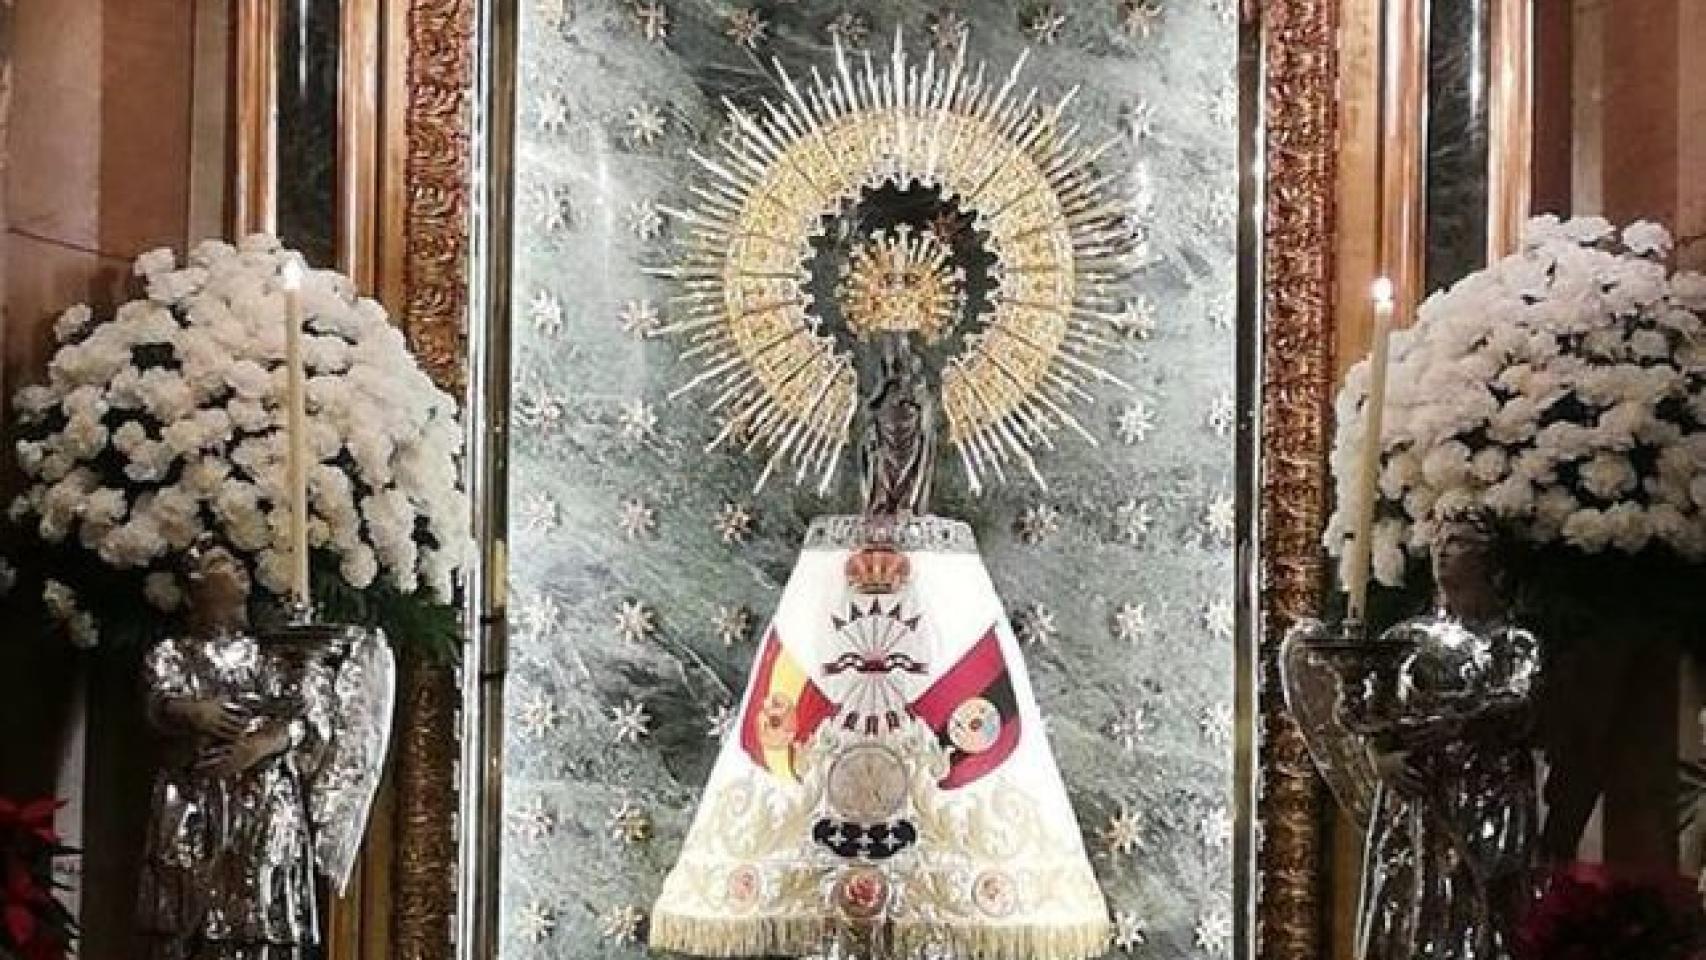 La Virgen del Pilar con el manto con la enseña de la Falange